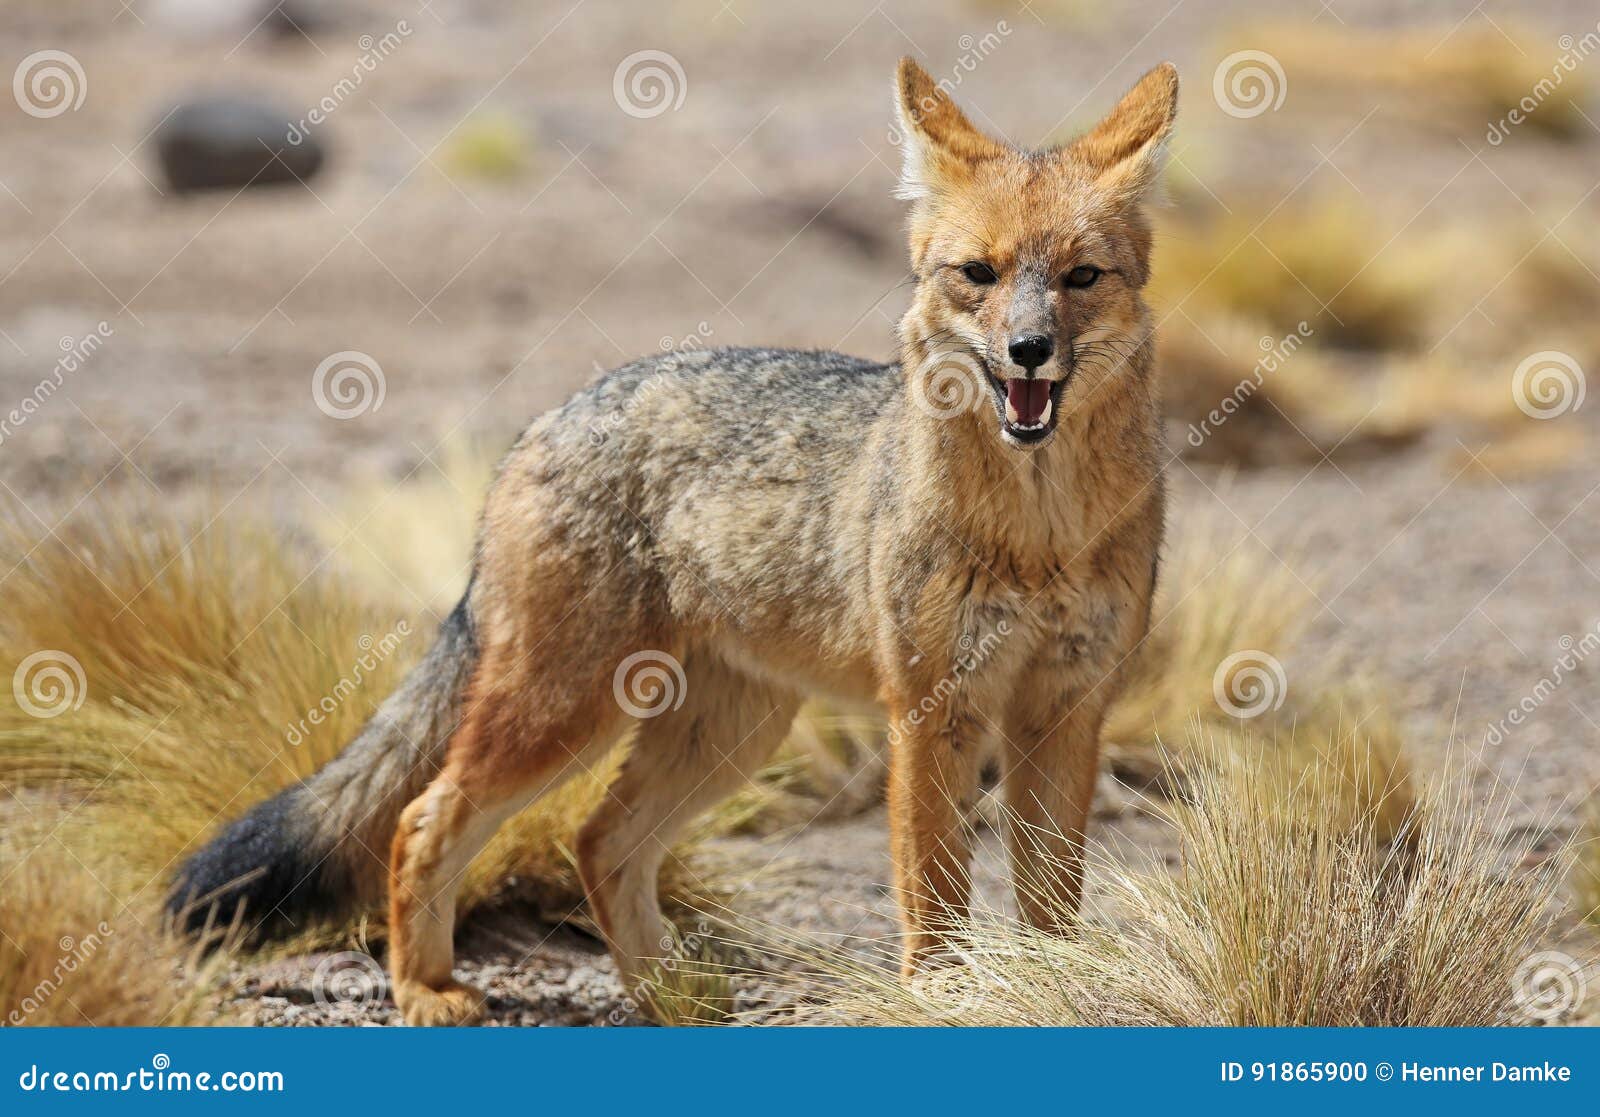 andean fox in siloli desert bolivia